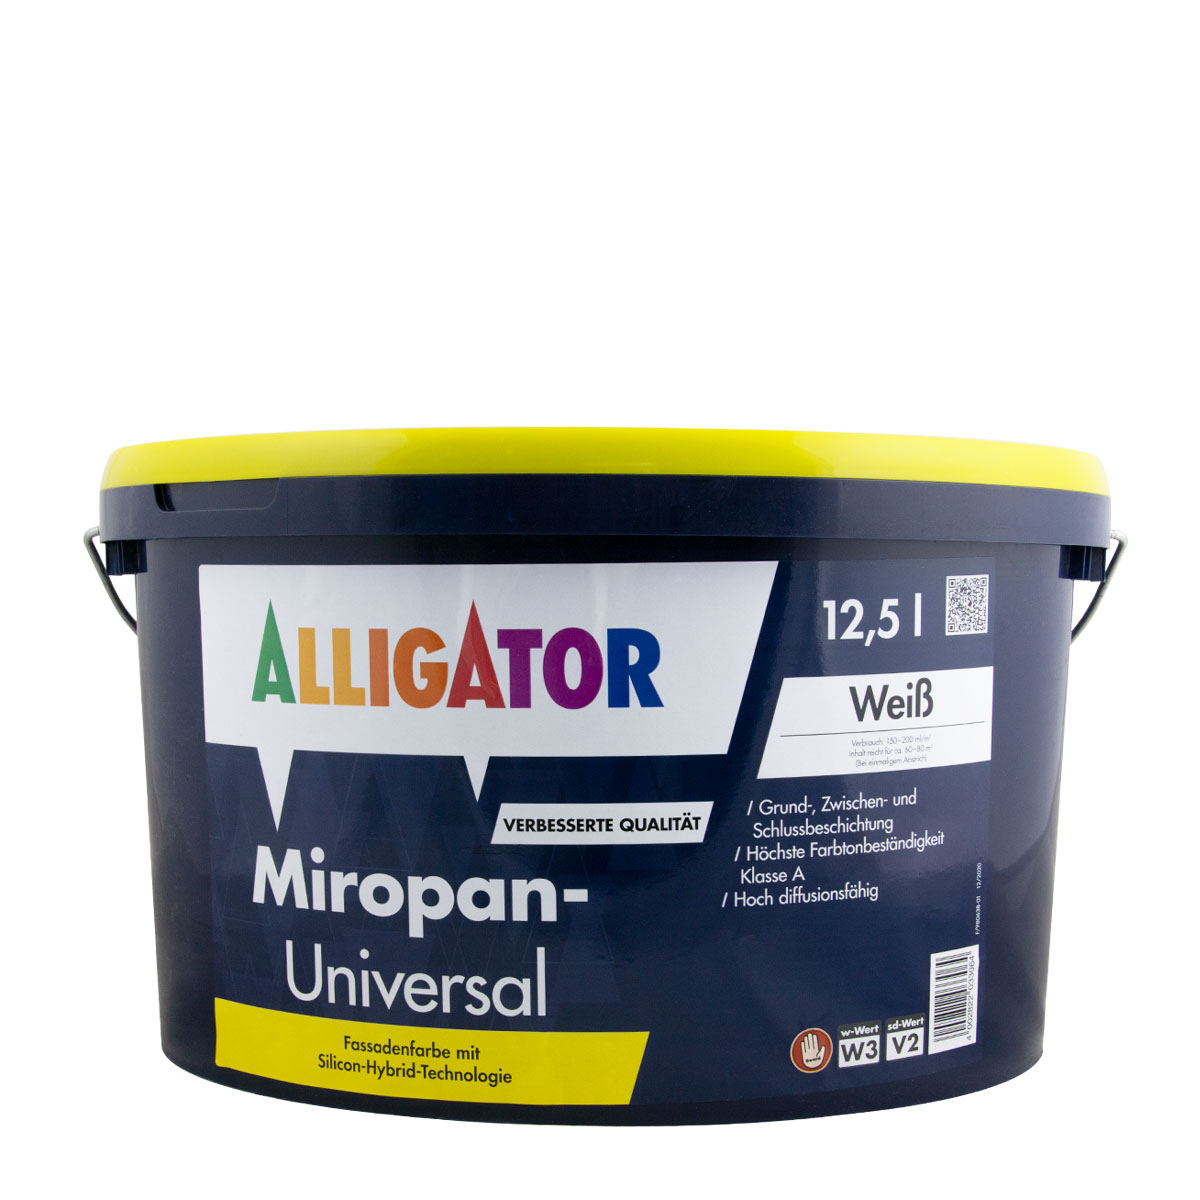 Alligator Miropan-Universal 12,5L weiss, Siliconharz-Fassadenfarbe